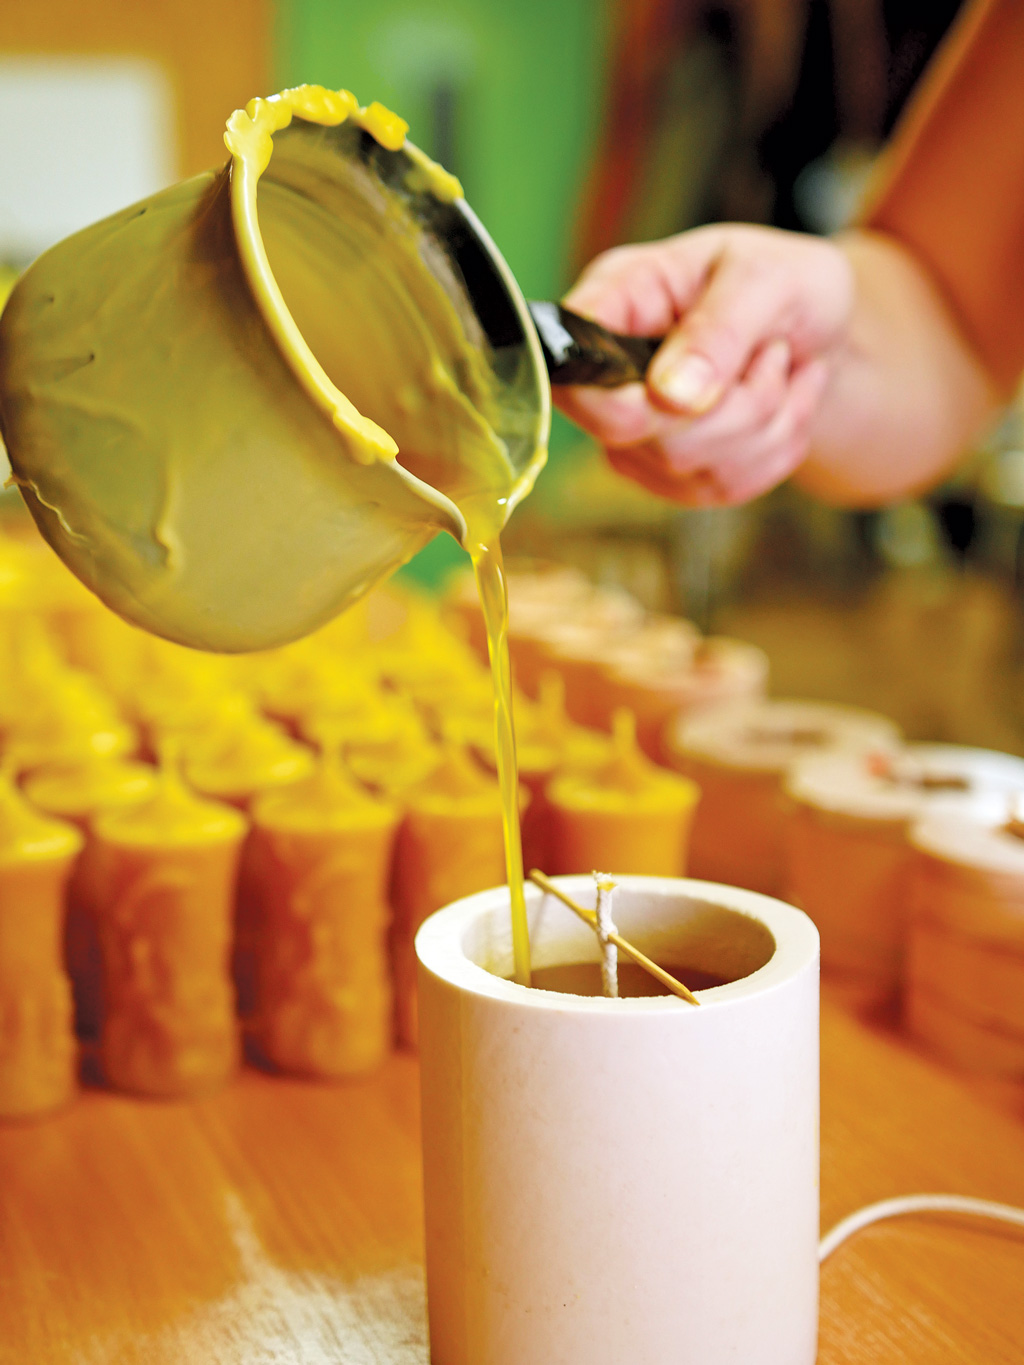 Krótki poradnik o produkcji świec z wosku pszczelego  (12)